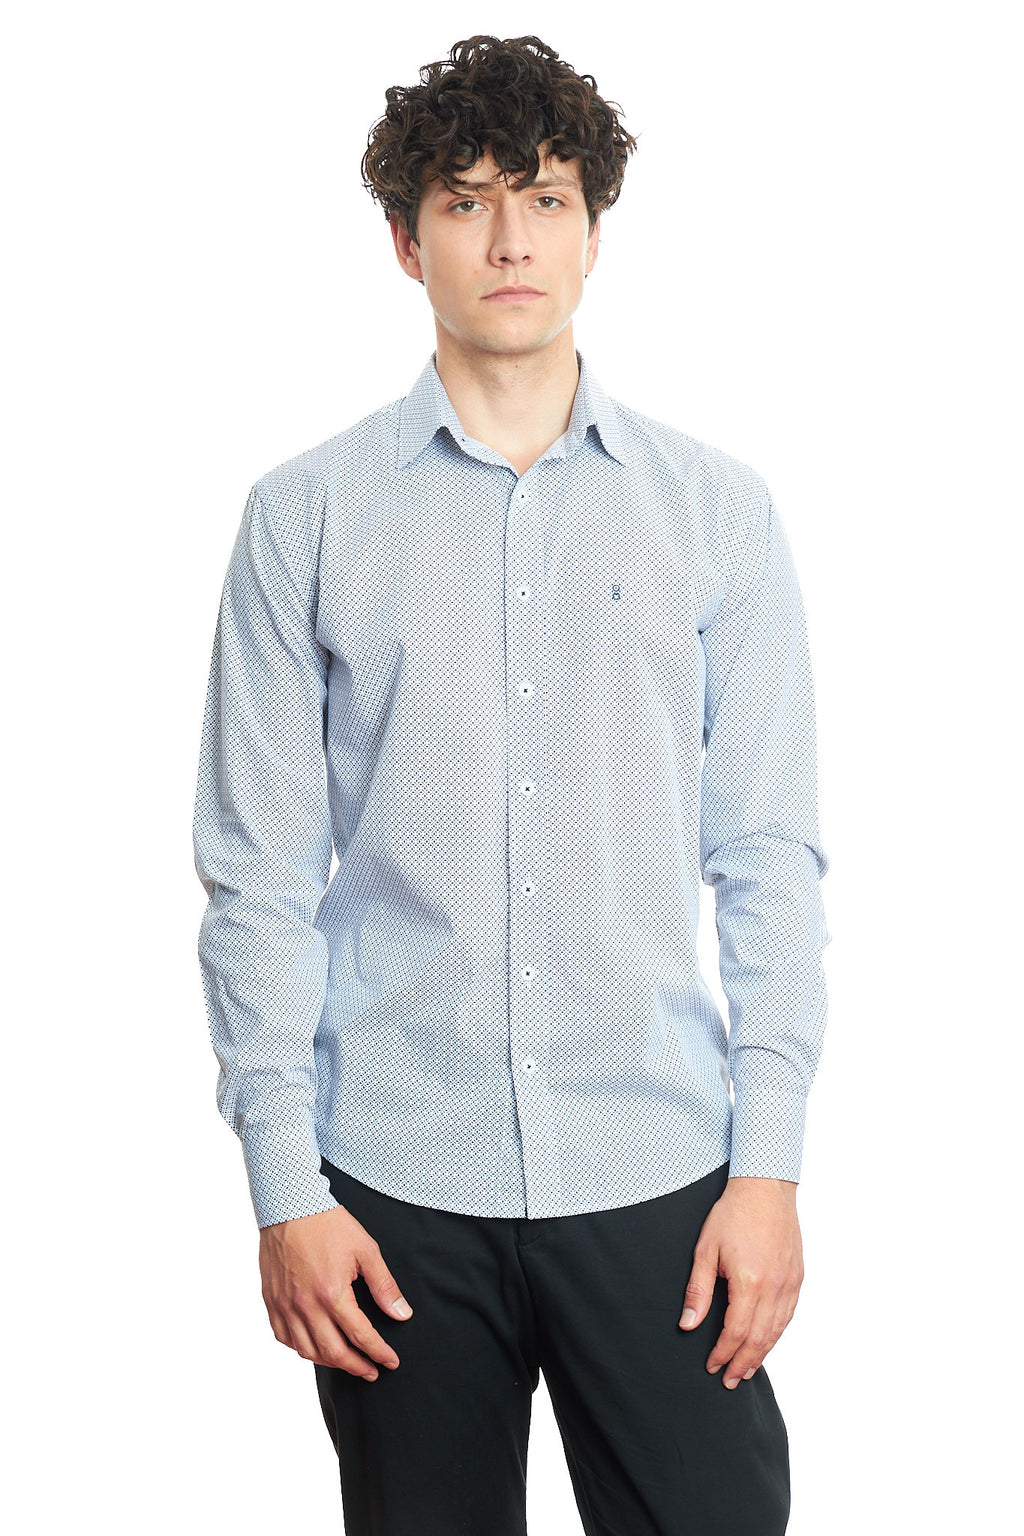 Мъжка вталена риза с дълъг ръкав на ситна щампа в синьо и бяло